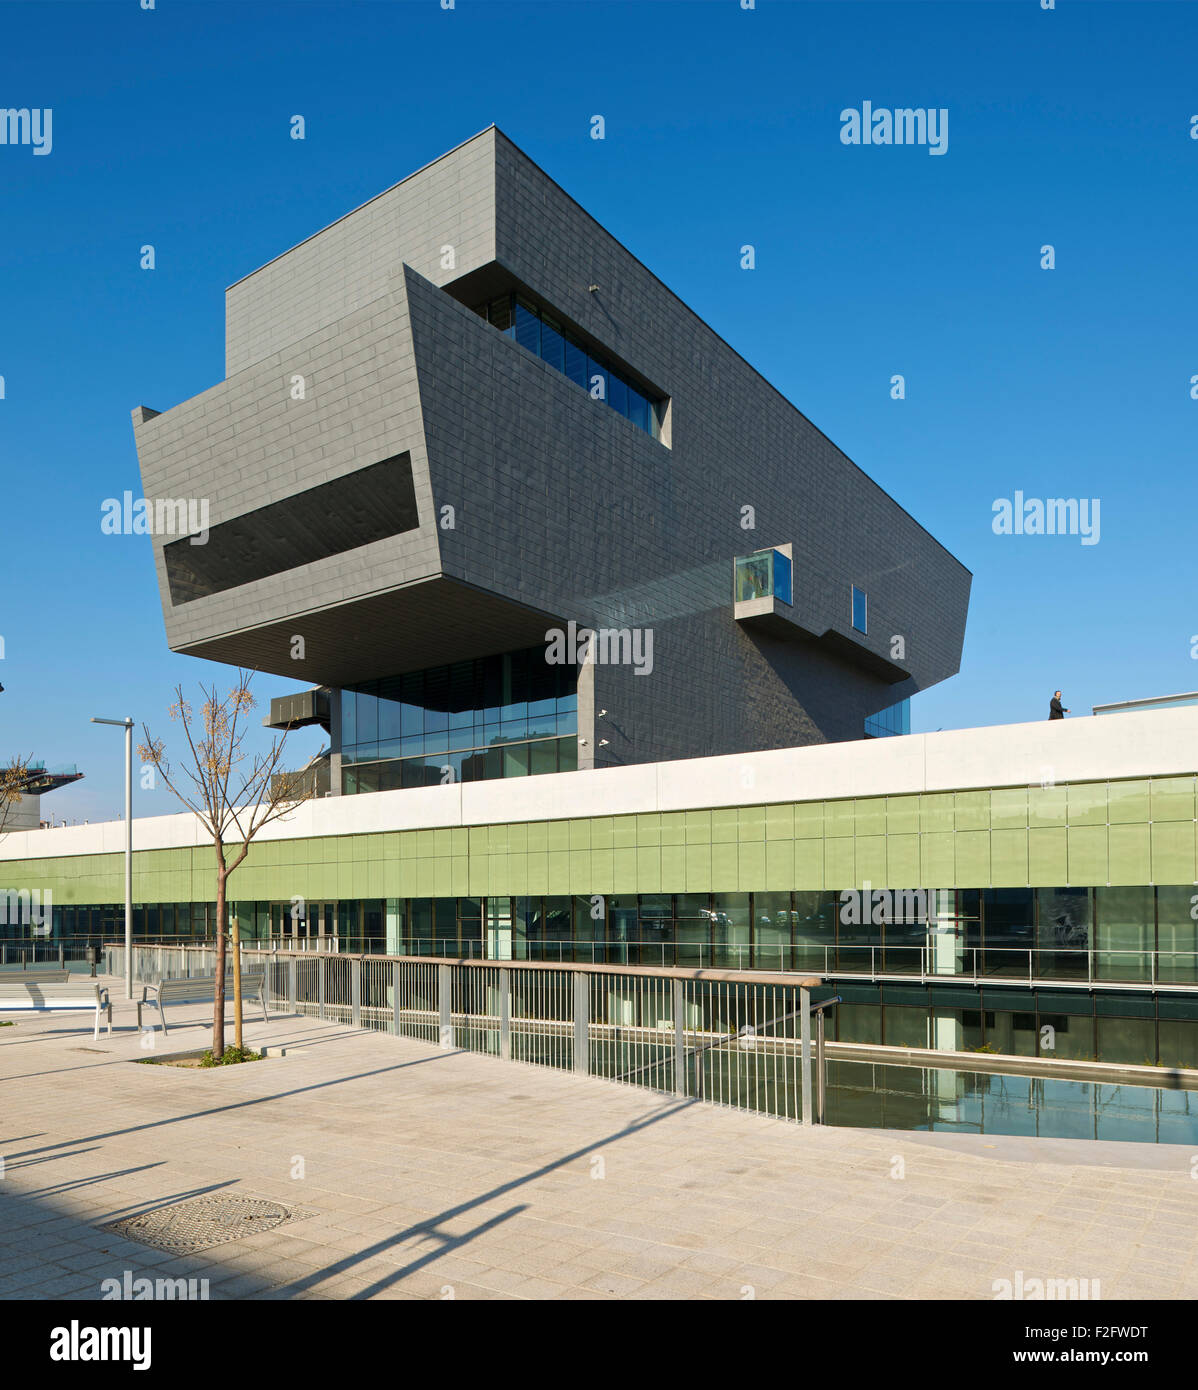 Vista prospettica della cucitrice con galleria. Museu del Disseny de Barcelona, Barcelona, Spagna. Architetto: MBM Arquitectes, 2013. Foto Stock